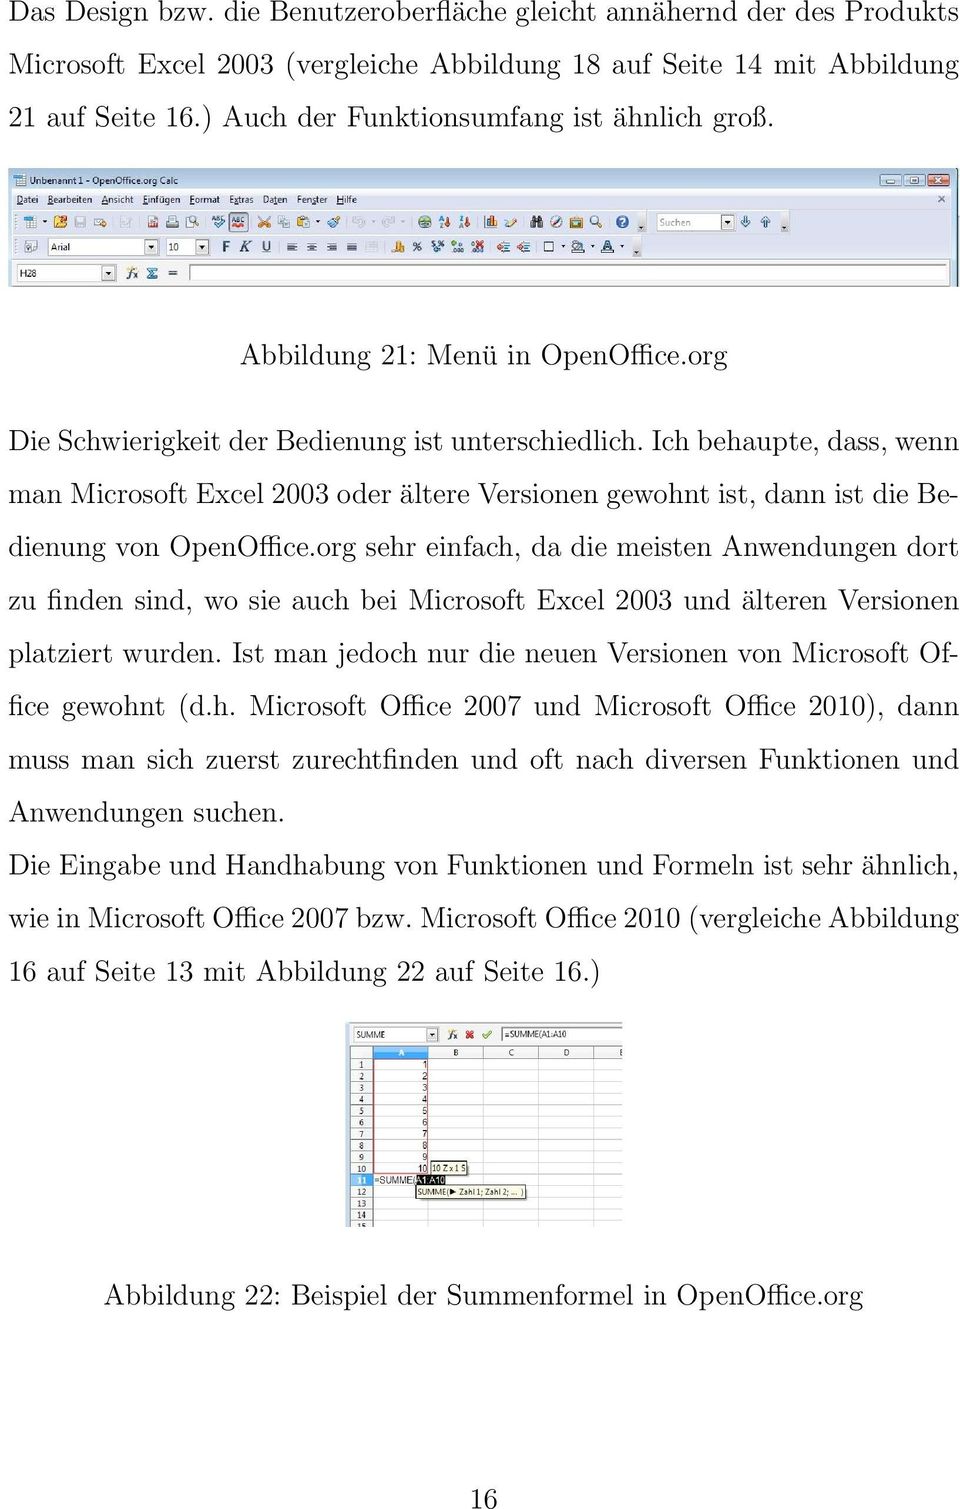 Ich behaupte, dass, wenn man Microsoft Excel 2003 oder ältere Versionen gewohnt ist, dann ist die Bedienung von OpenOffice.